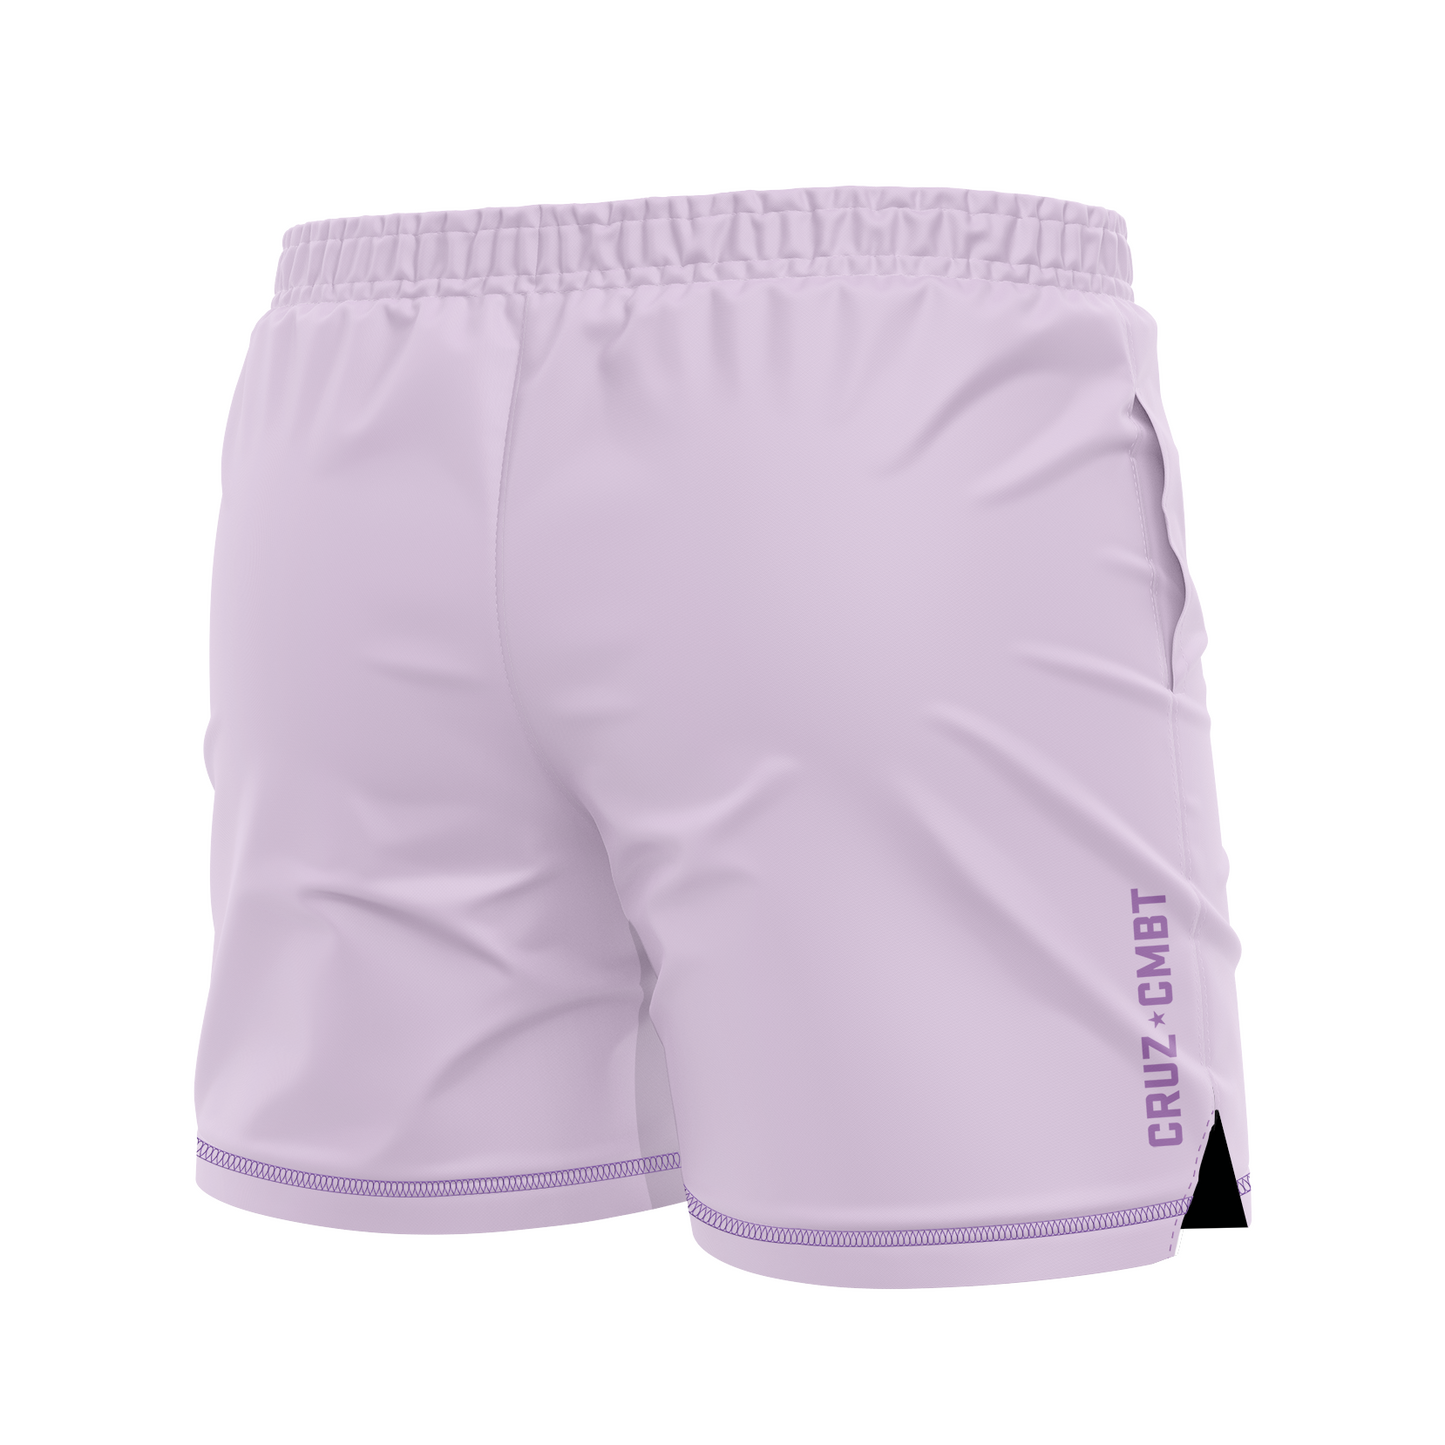 Base Collection men's FC shorts, grape